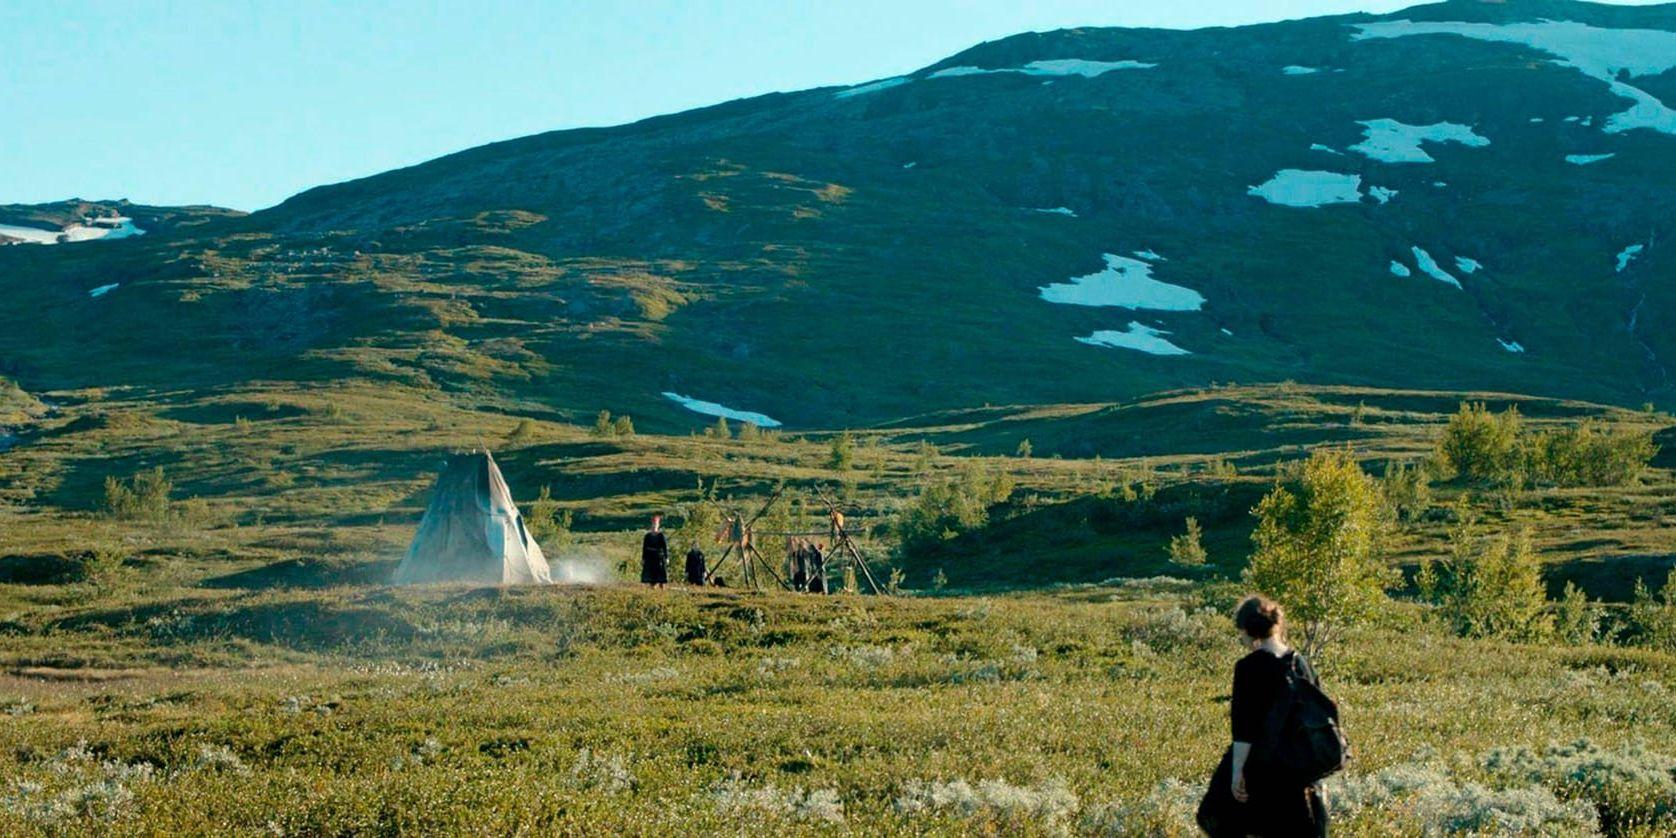 Amanda Kernell vann Nordiska filmpriset på en miljon kronor för sin långfilmsdebut Sameblod. Ett mäktigt, universellt frihetsdrama som redan väckt stor internationell uppmärksamhet. Bild: Nordisk film